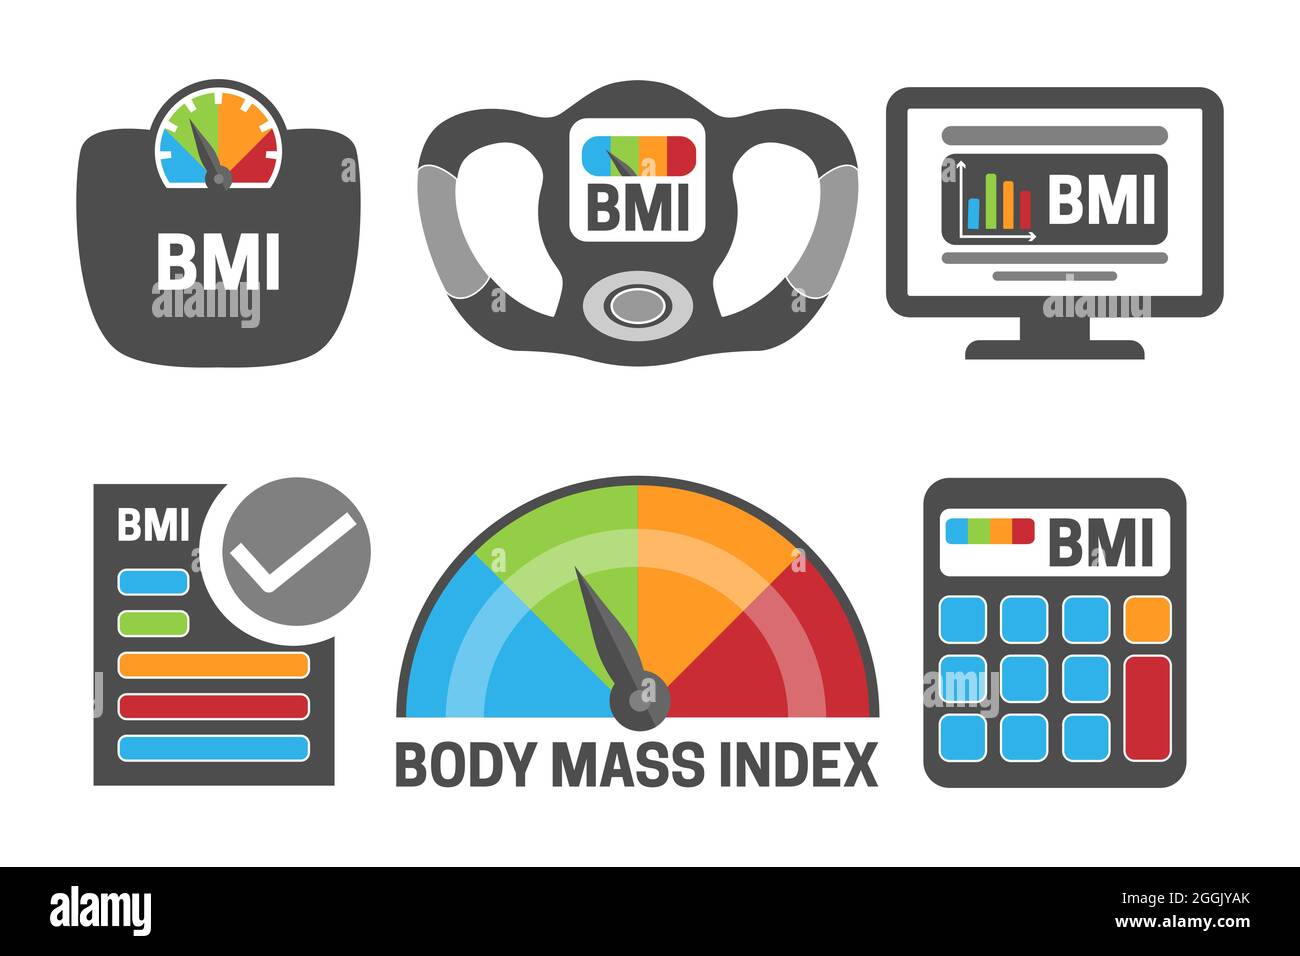 BMI Body Mass Index Calculation Gray Illustration Icon Set mit BMI-Gerät, Skalenmessung und Gesundheit, BMI-Rechnersymbolen. Stock Vektor